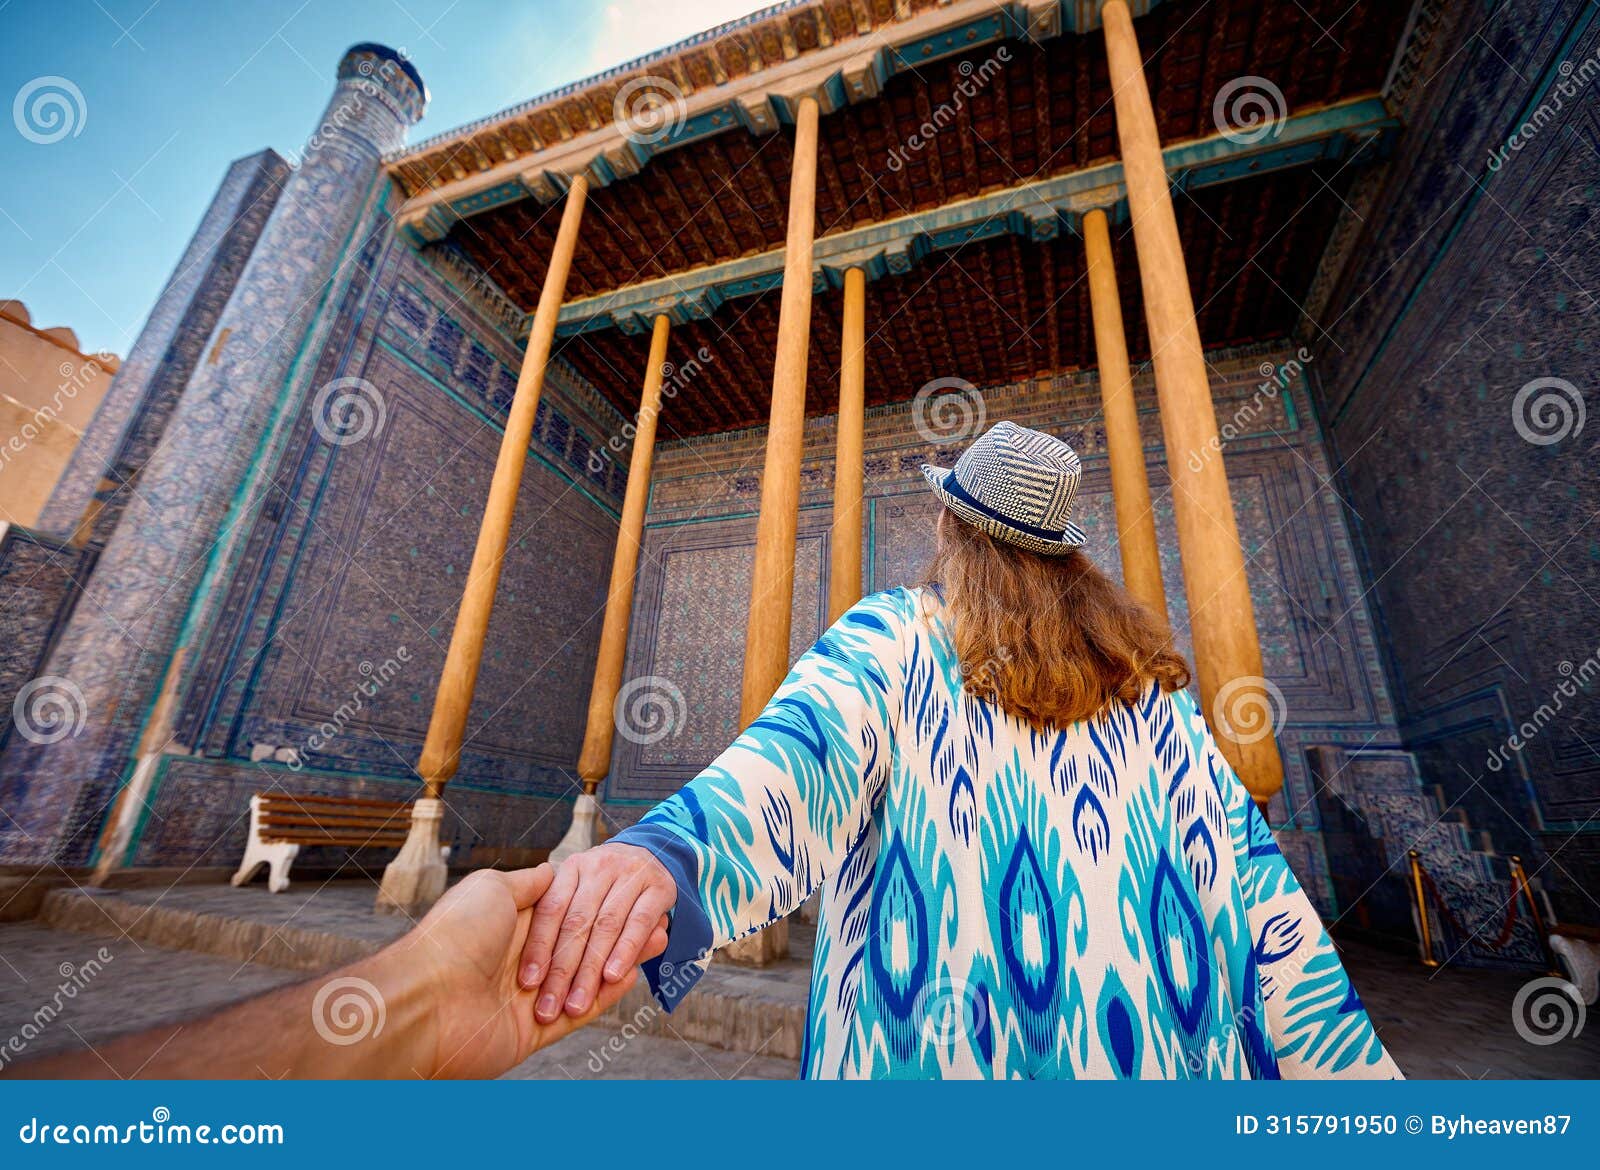 woman tourist at old city khiva in uzbekistan